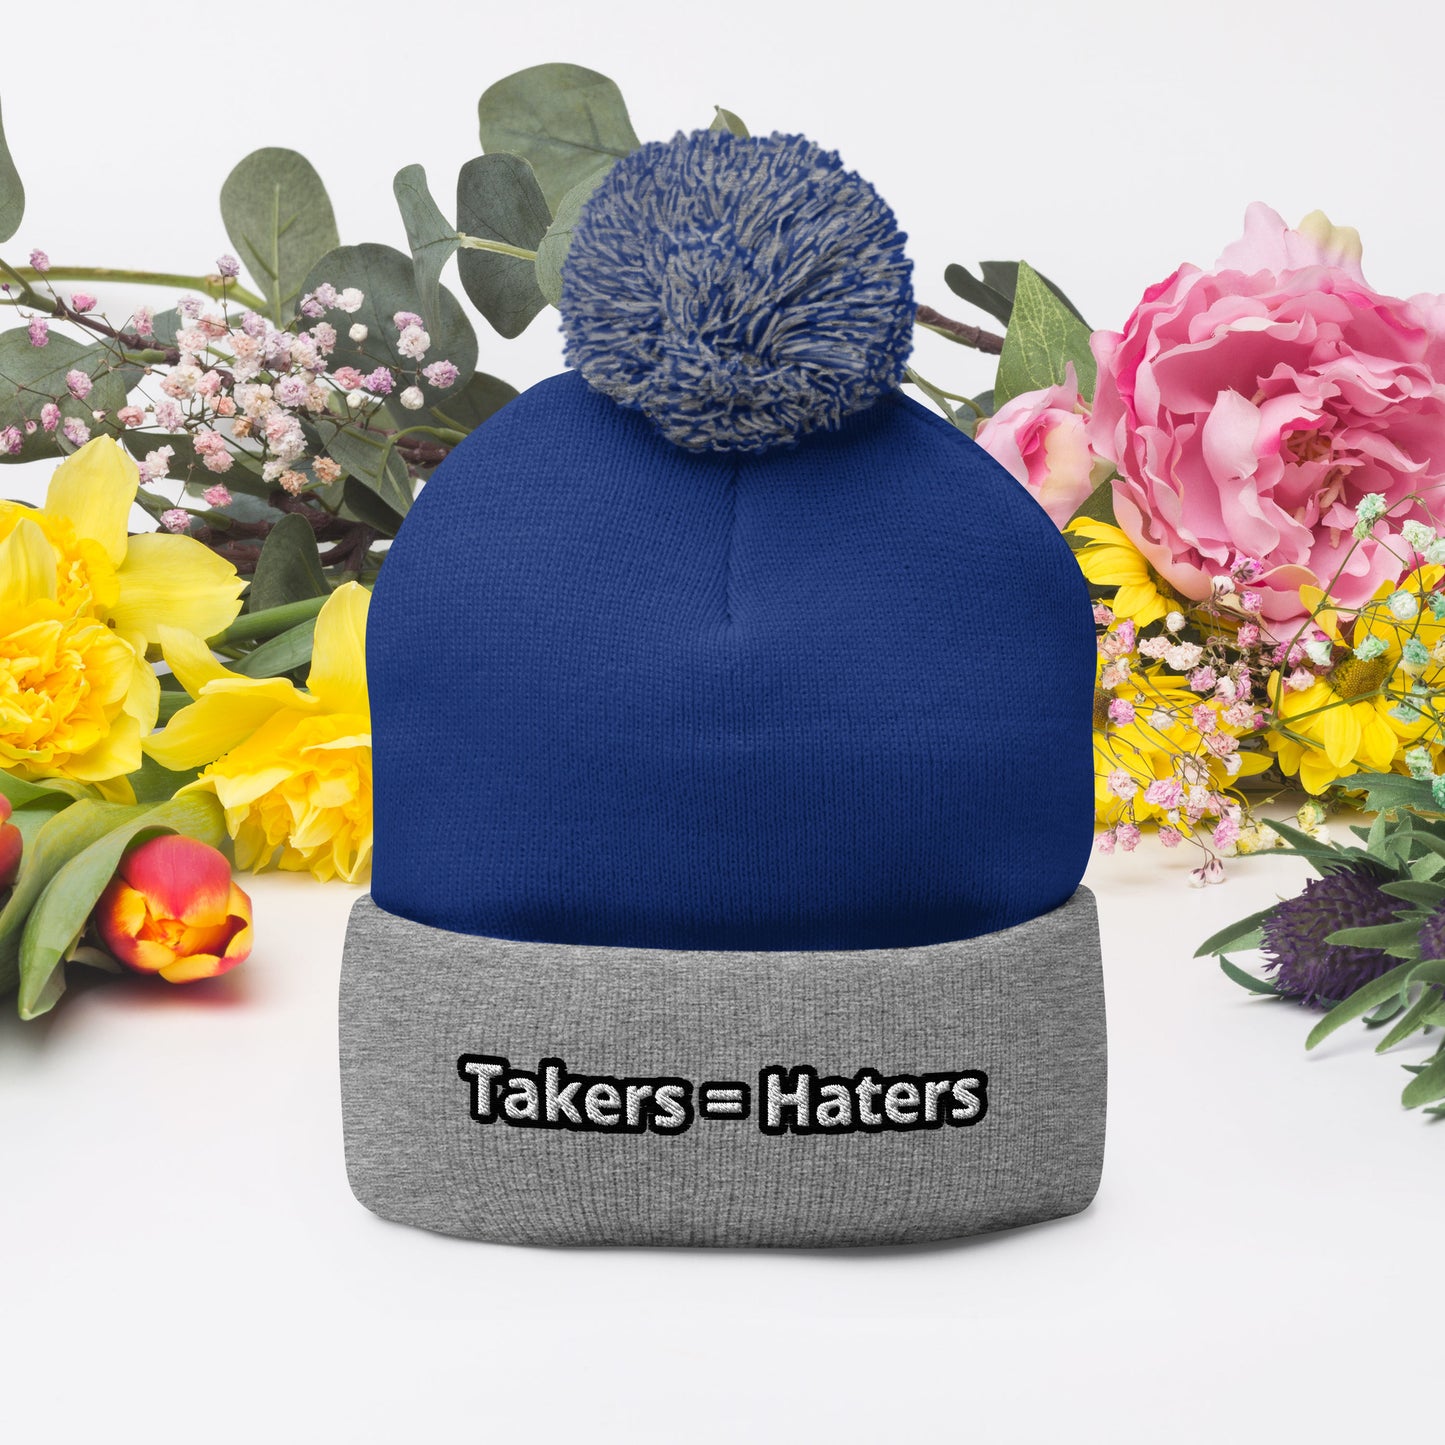 Takers = Haters Pom-Pom Beanie